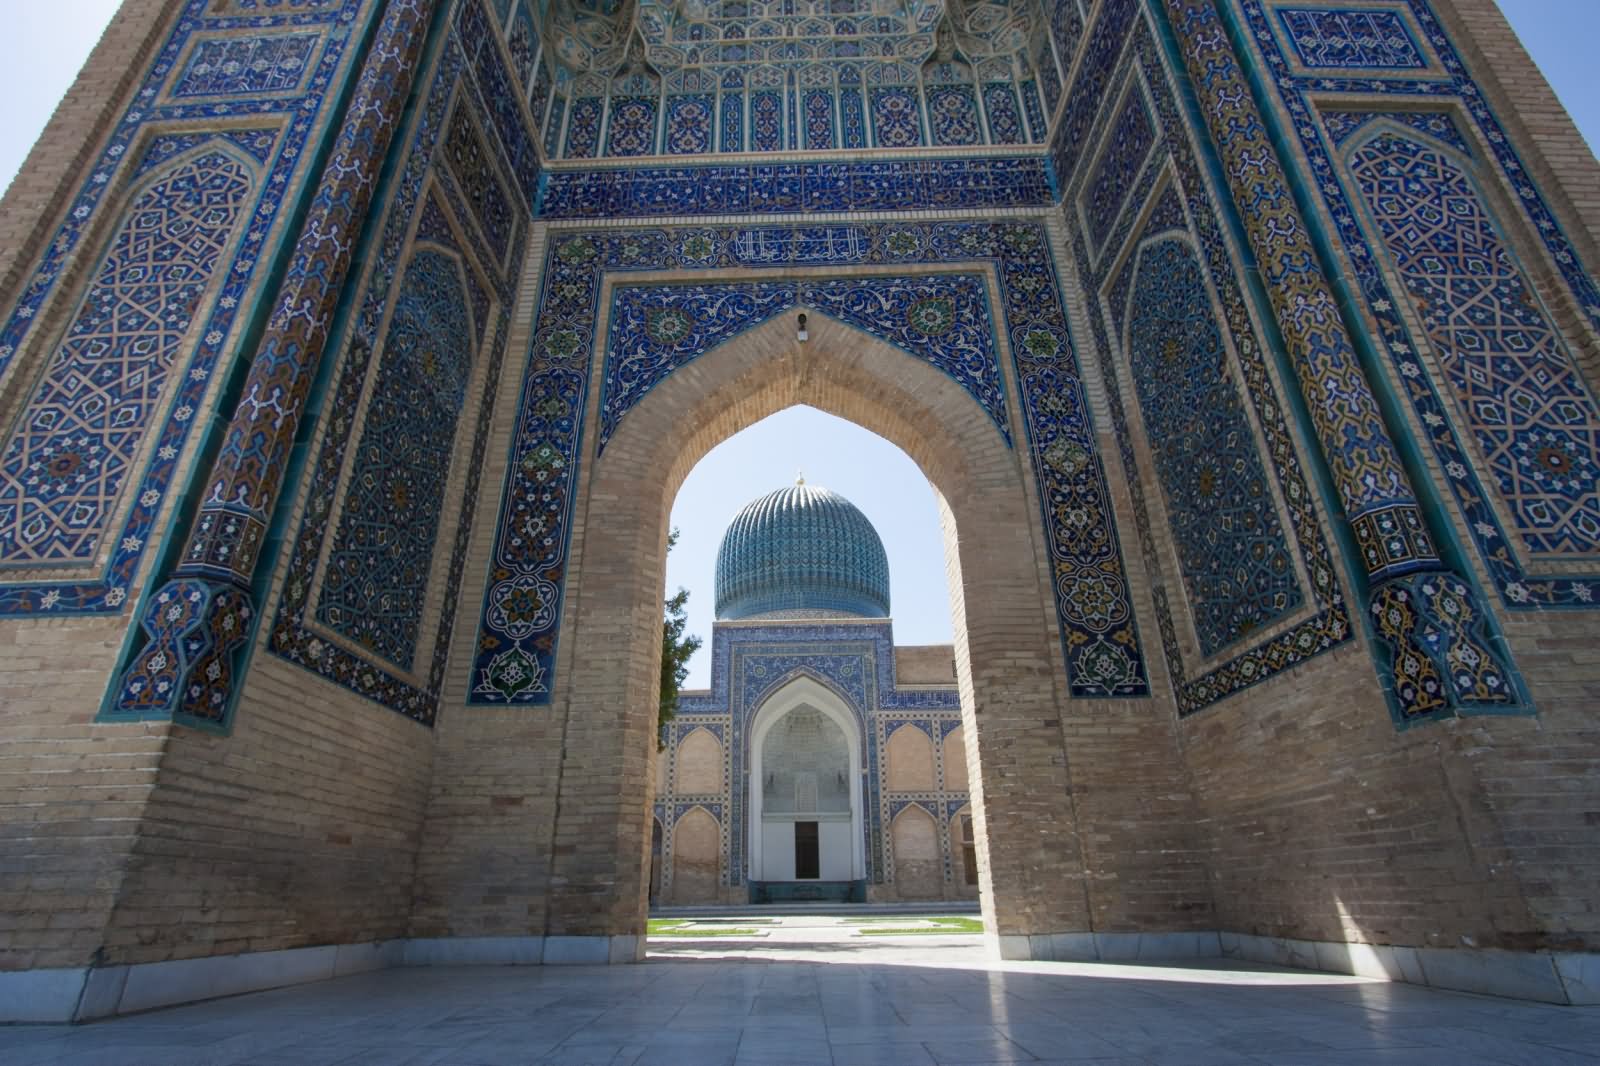 Main Entrance Gate Of The Bibi-Khanym Mosque In Samarkand